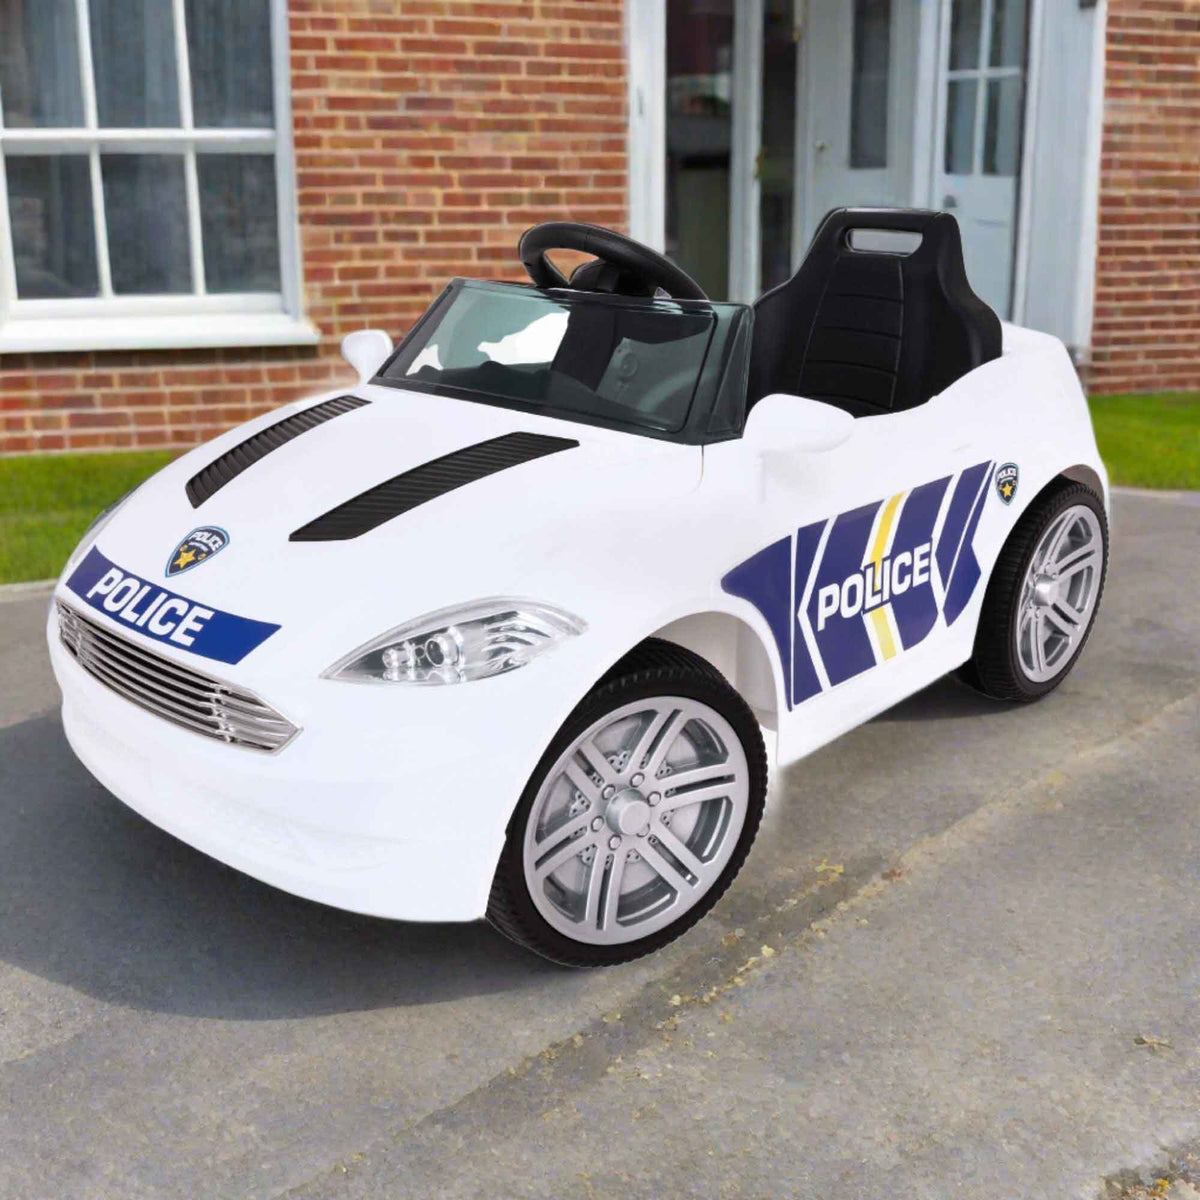 Evo 6V Kids Electric Ride On | Police Car